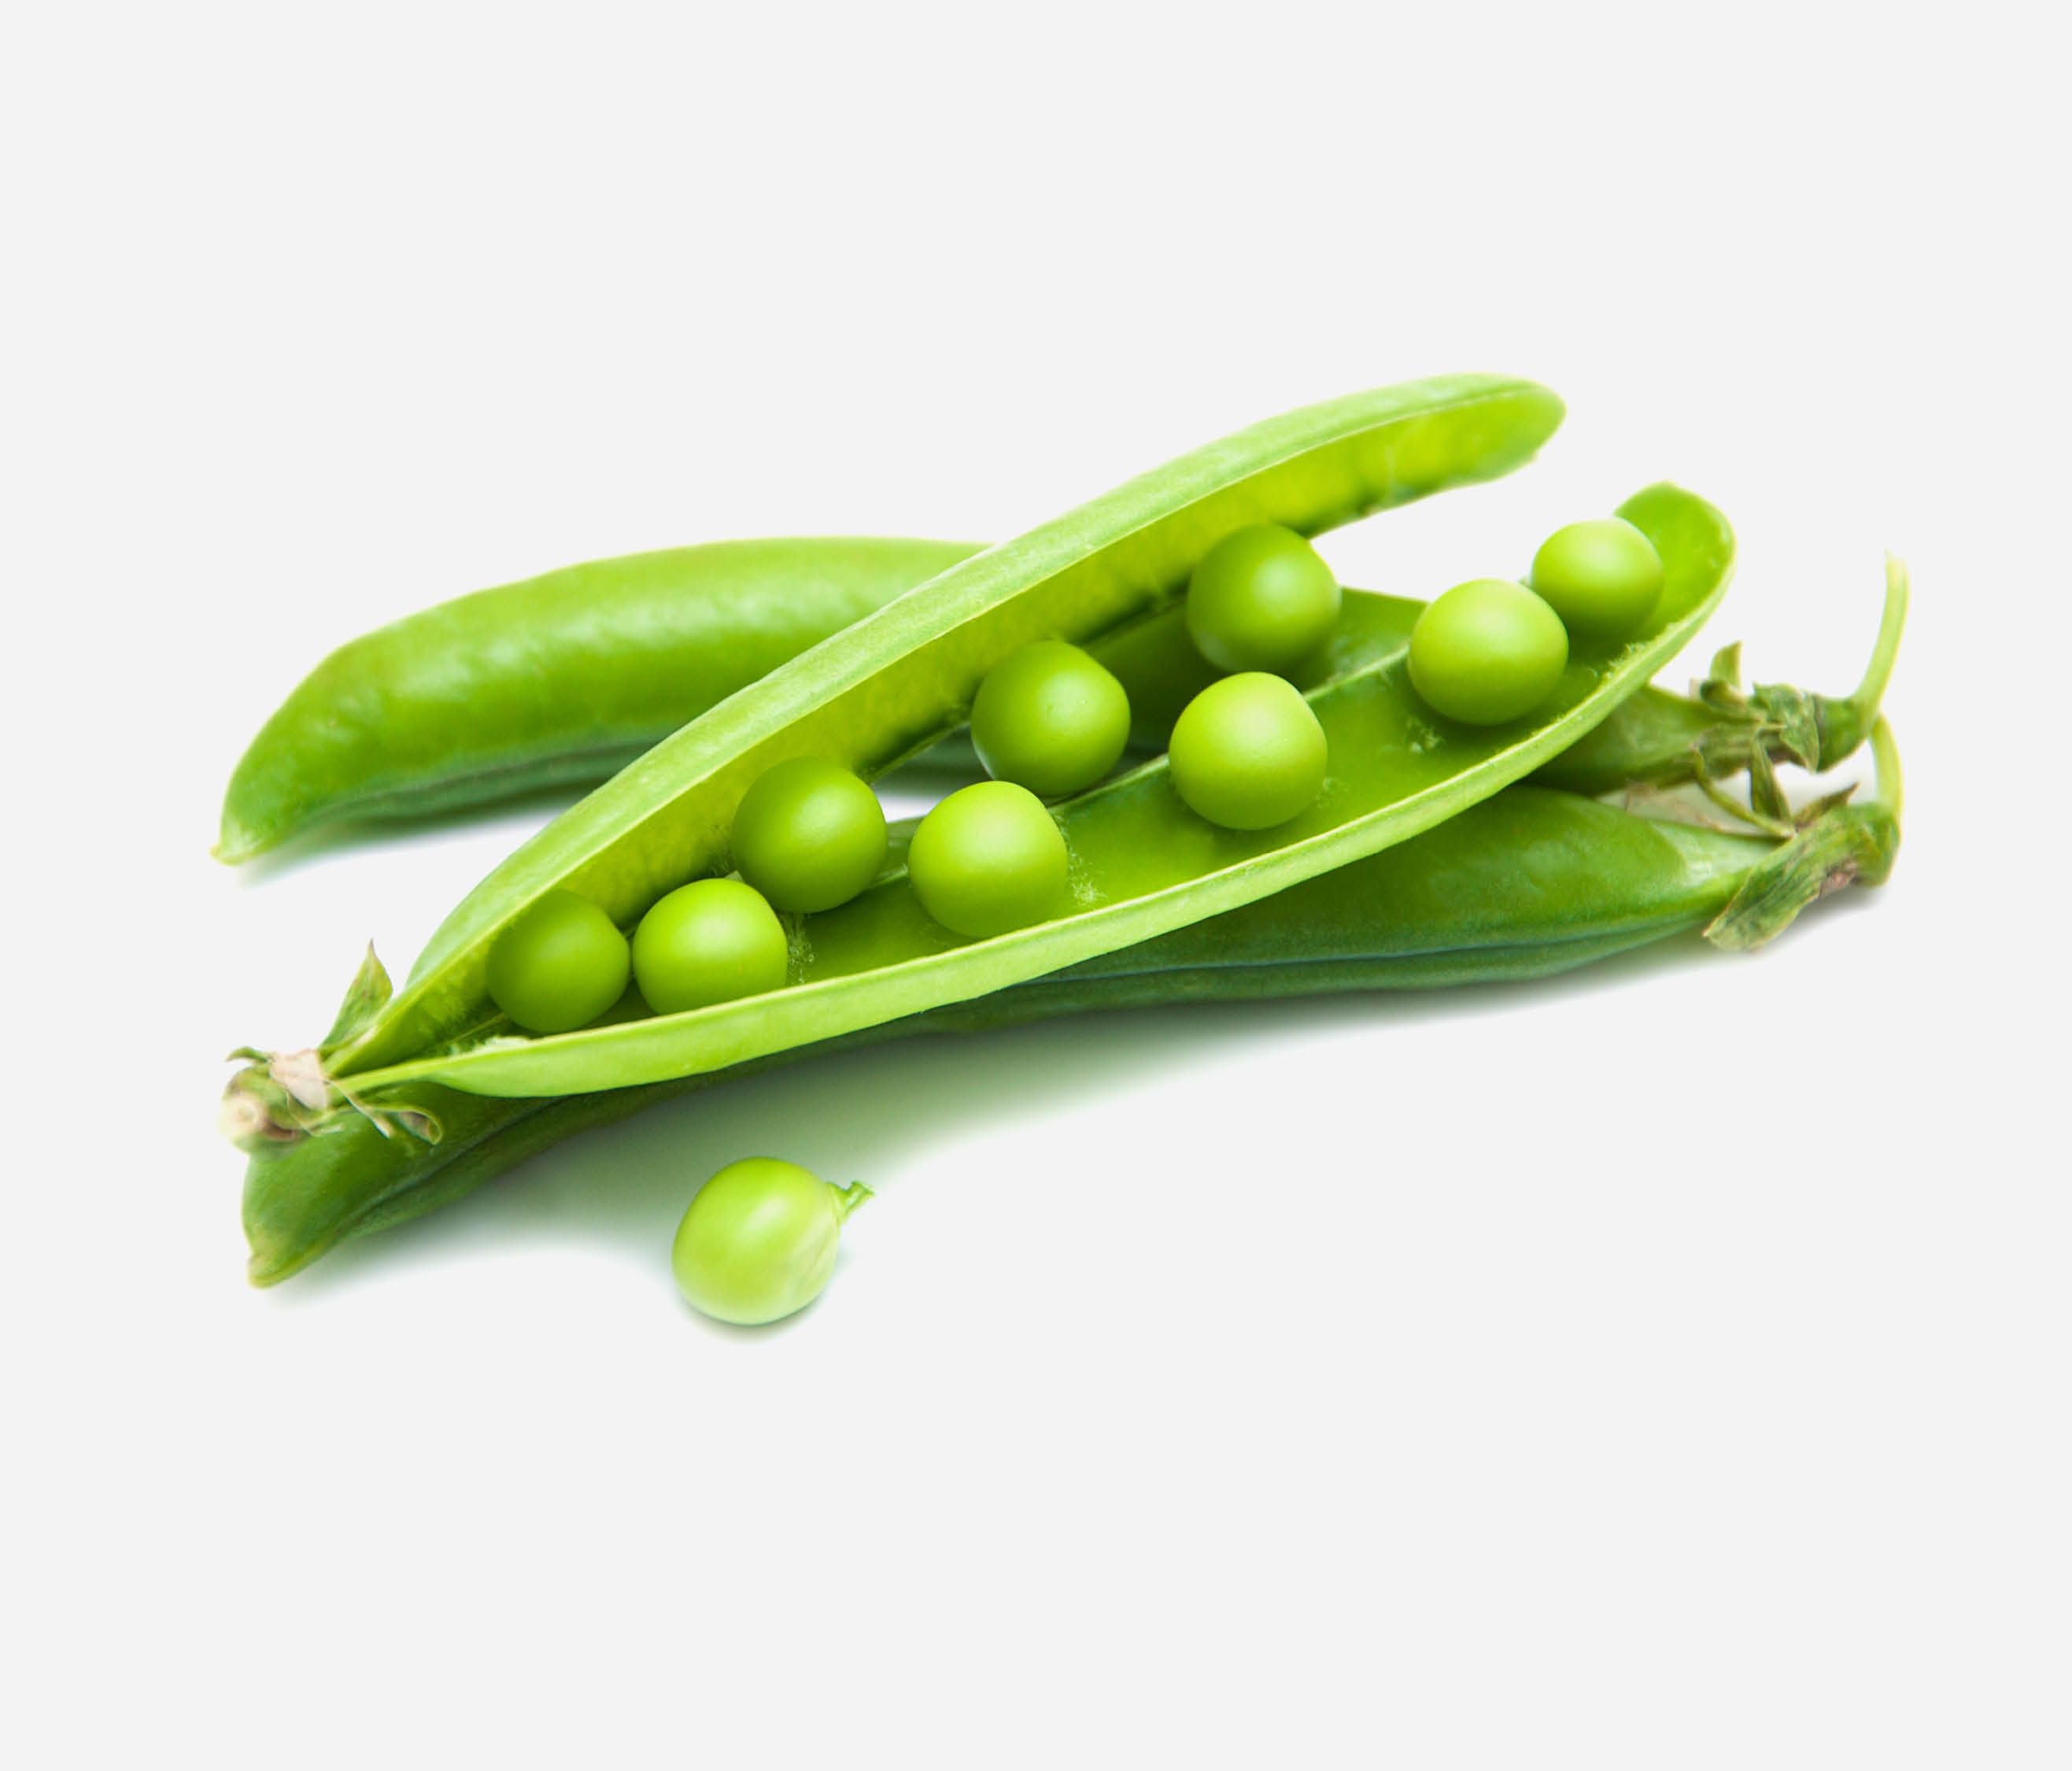 split open peas in a pod